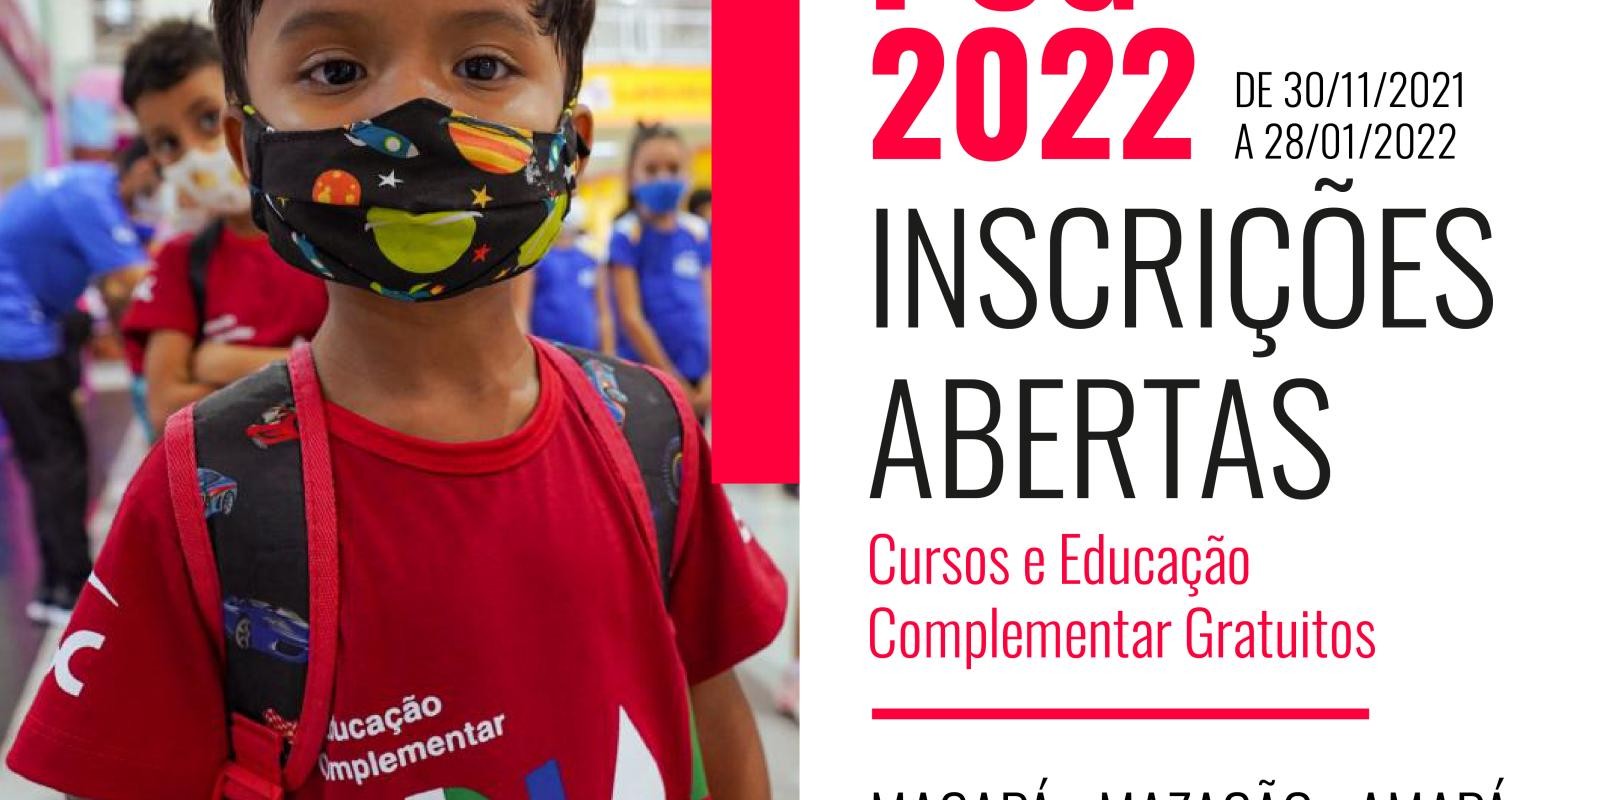 Sesc Amapá abre vagas para bolsas nas atividades culturais, educativas e recreativas com início em 2022